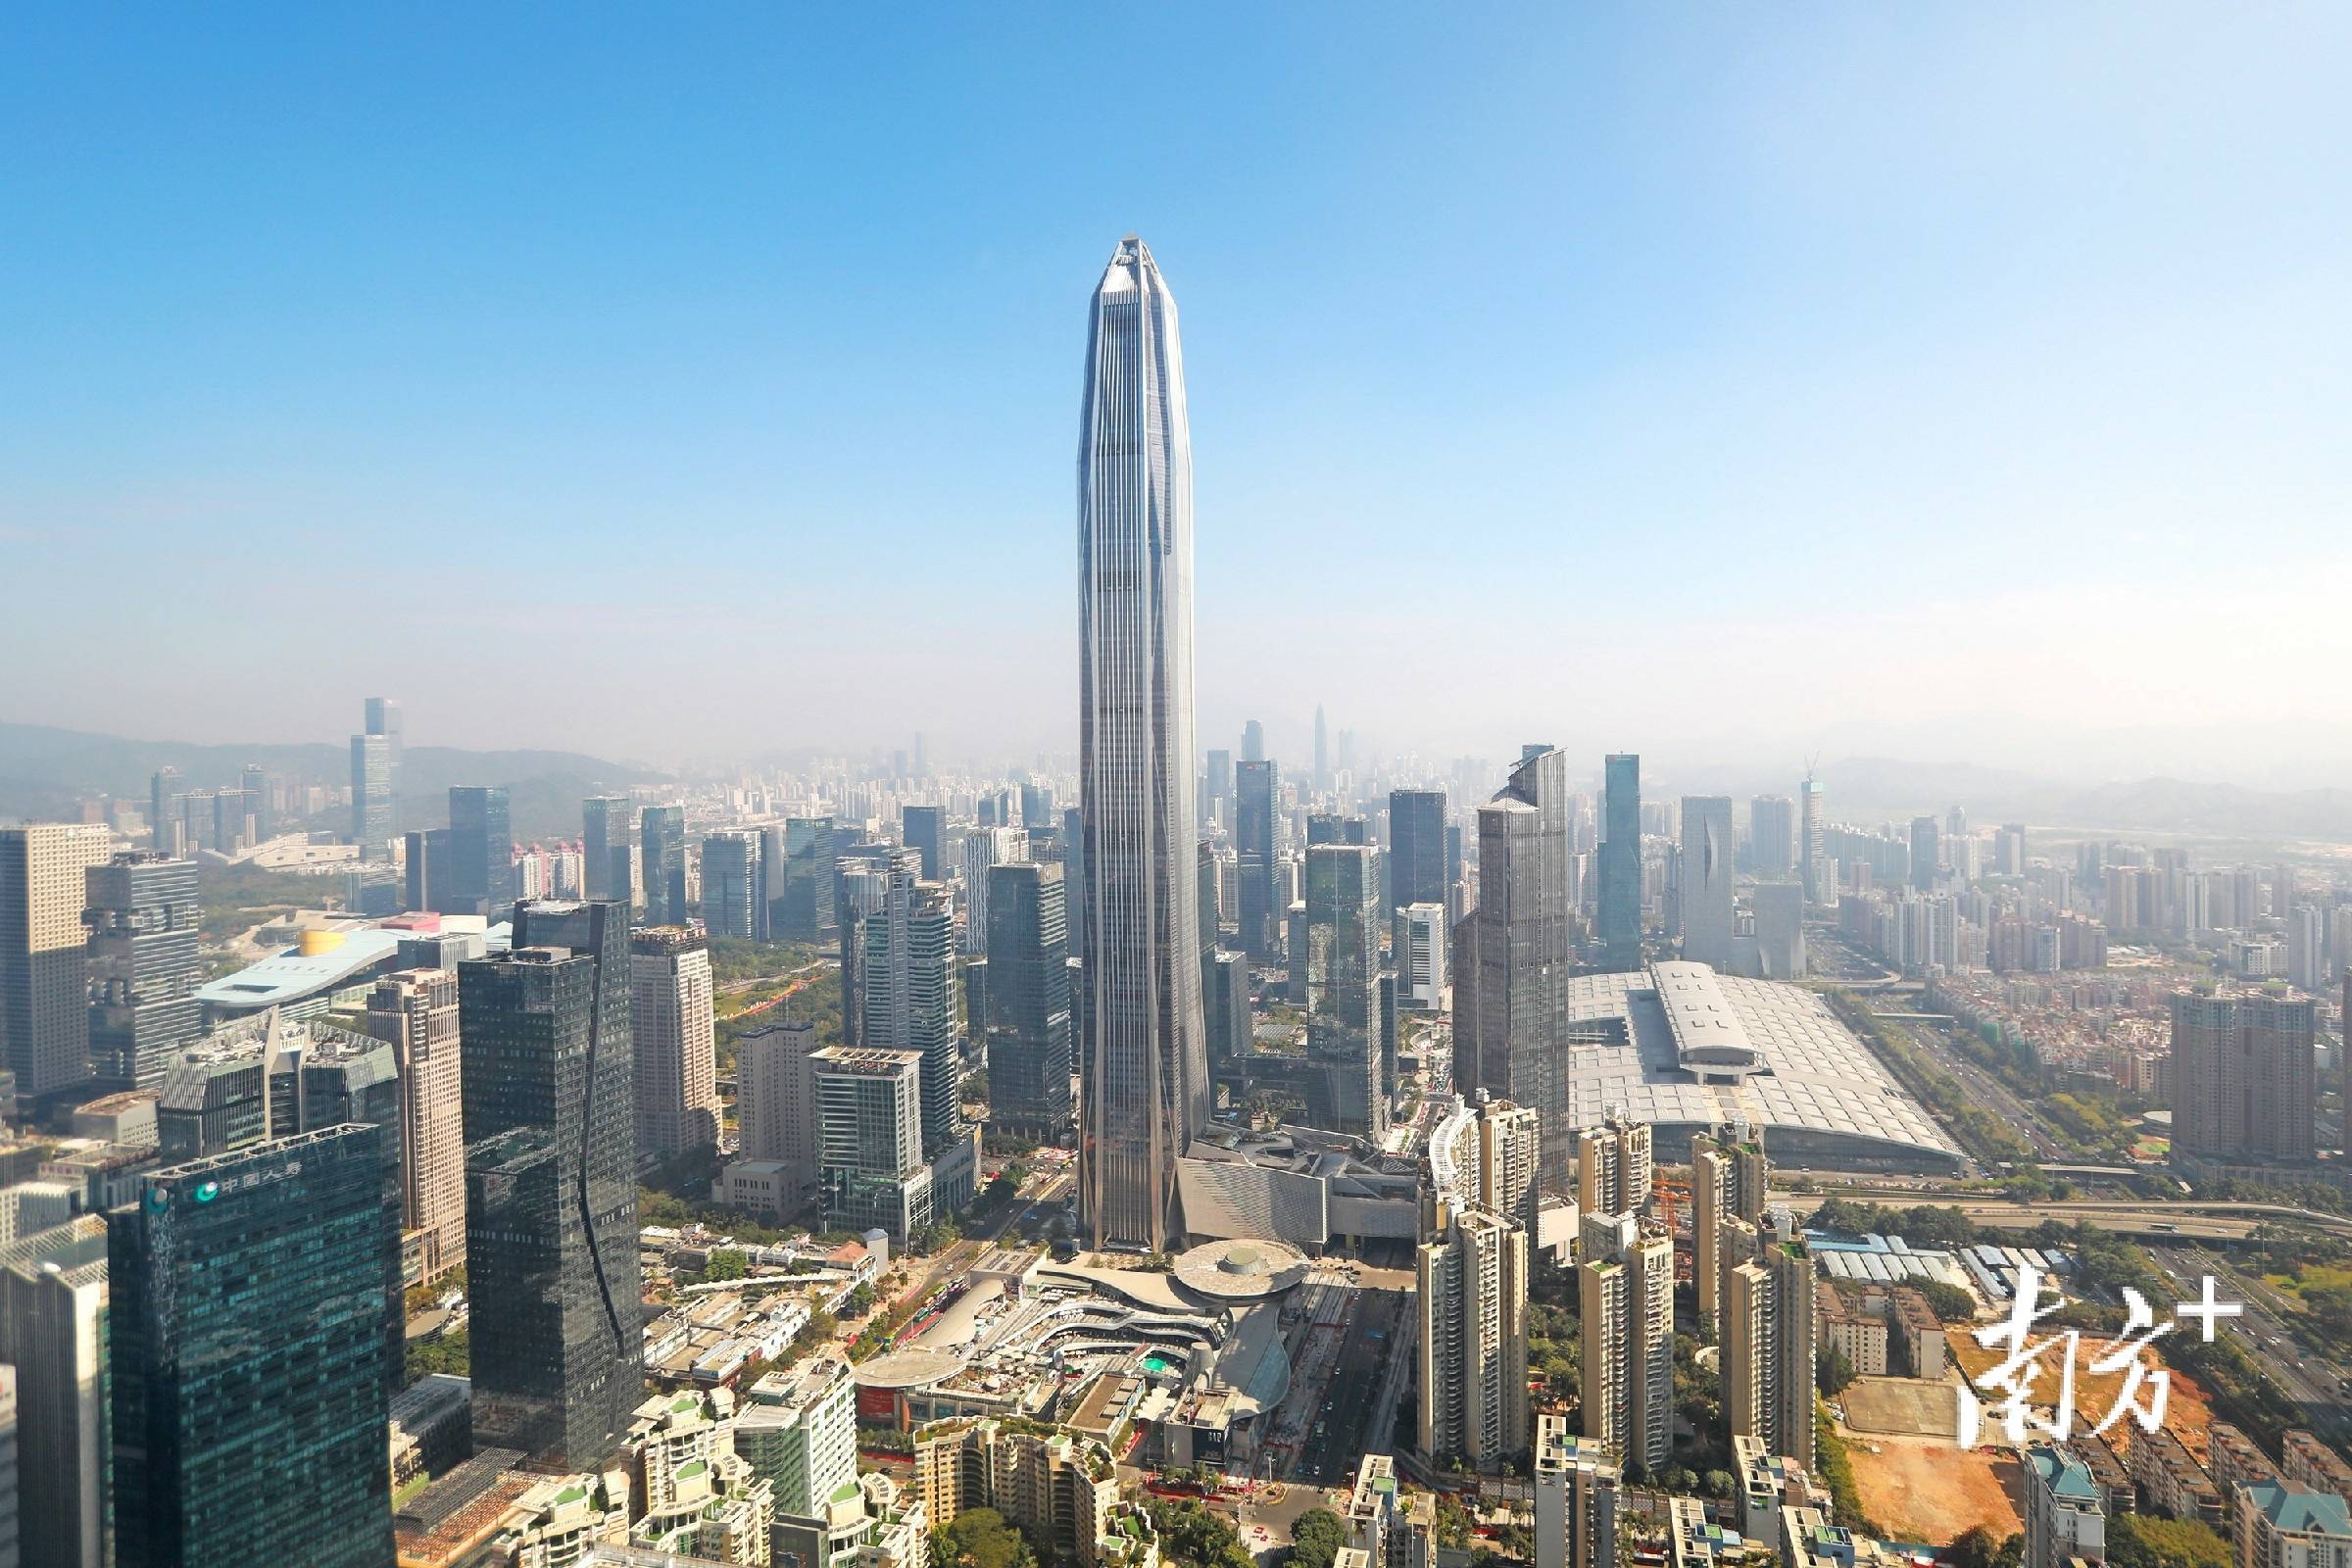 1米的身高其如一把宝剑,直插天际平安国际金融中心深圳的天际线迎来了